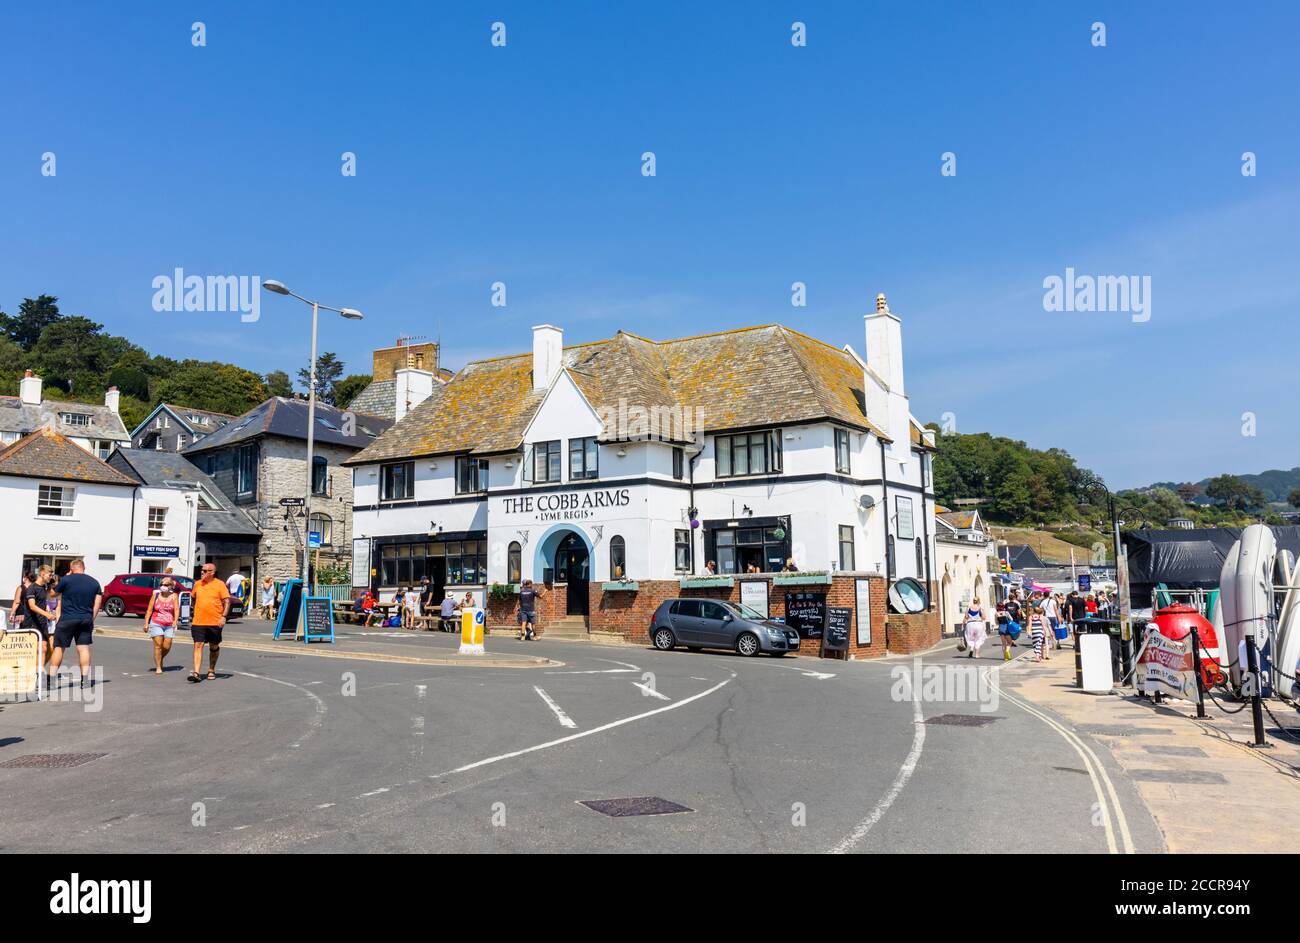 Le pub Cobb Arms par le Cobb à Lyme Regis, une station balnéaire populaire sur la côte jurassique à Dorset, au sud-ouest de l'Angleterre Banque D'Images